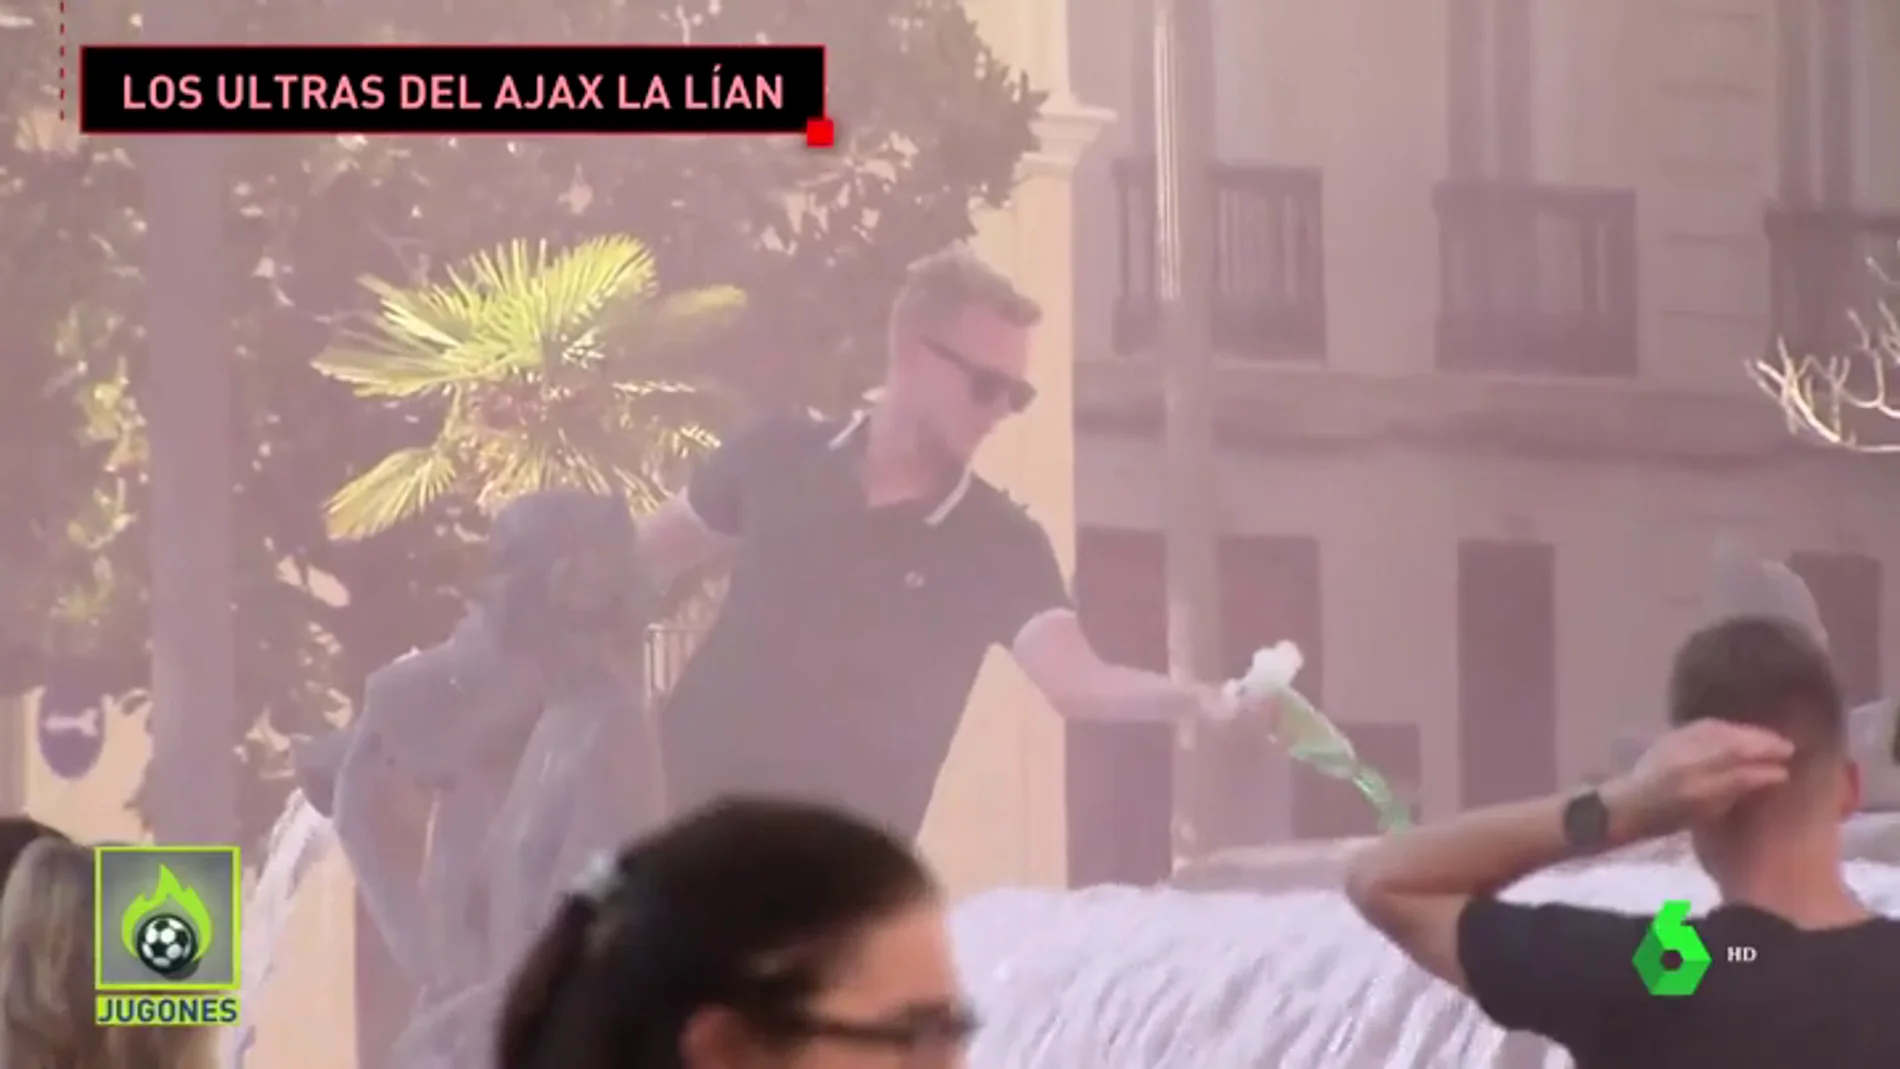 Los ultras del Ajax siembran el caos en Valencia: batalla a palos, detergente en una fuente...